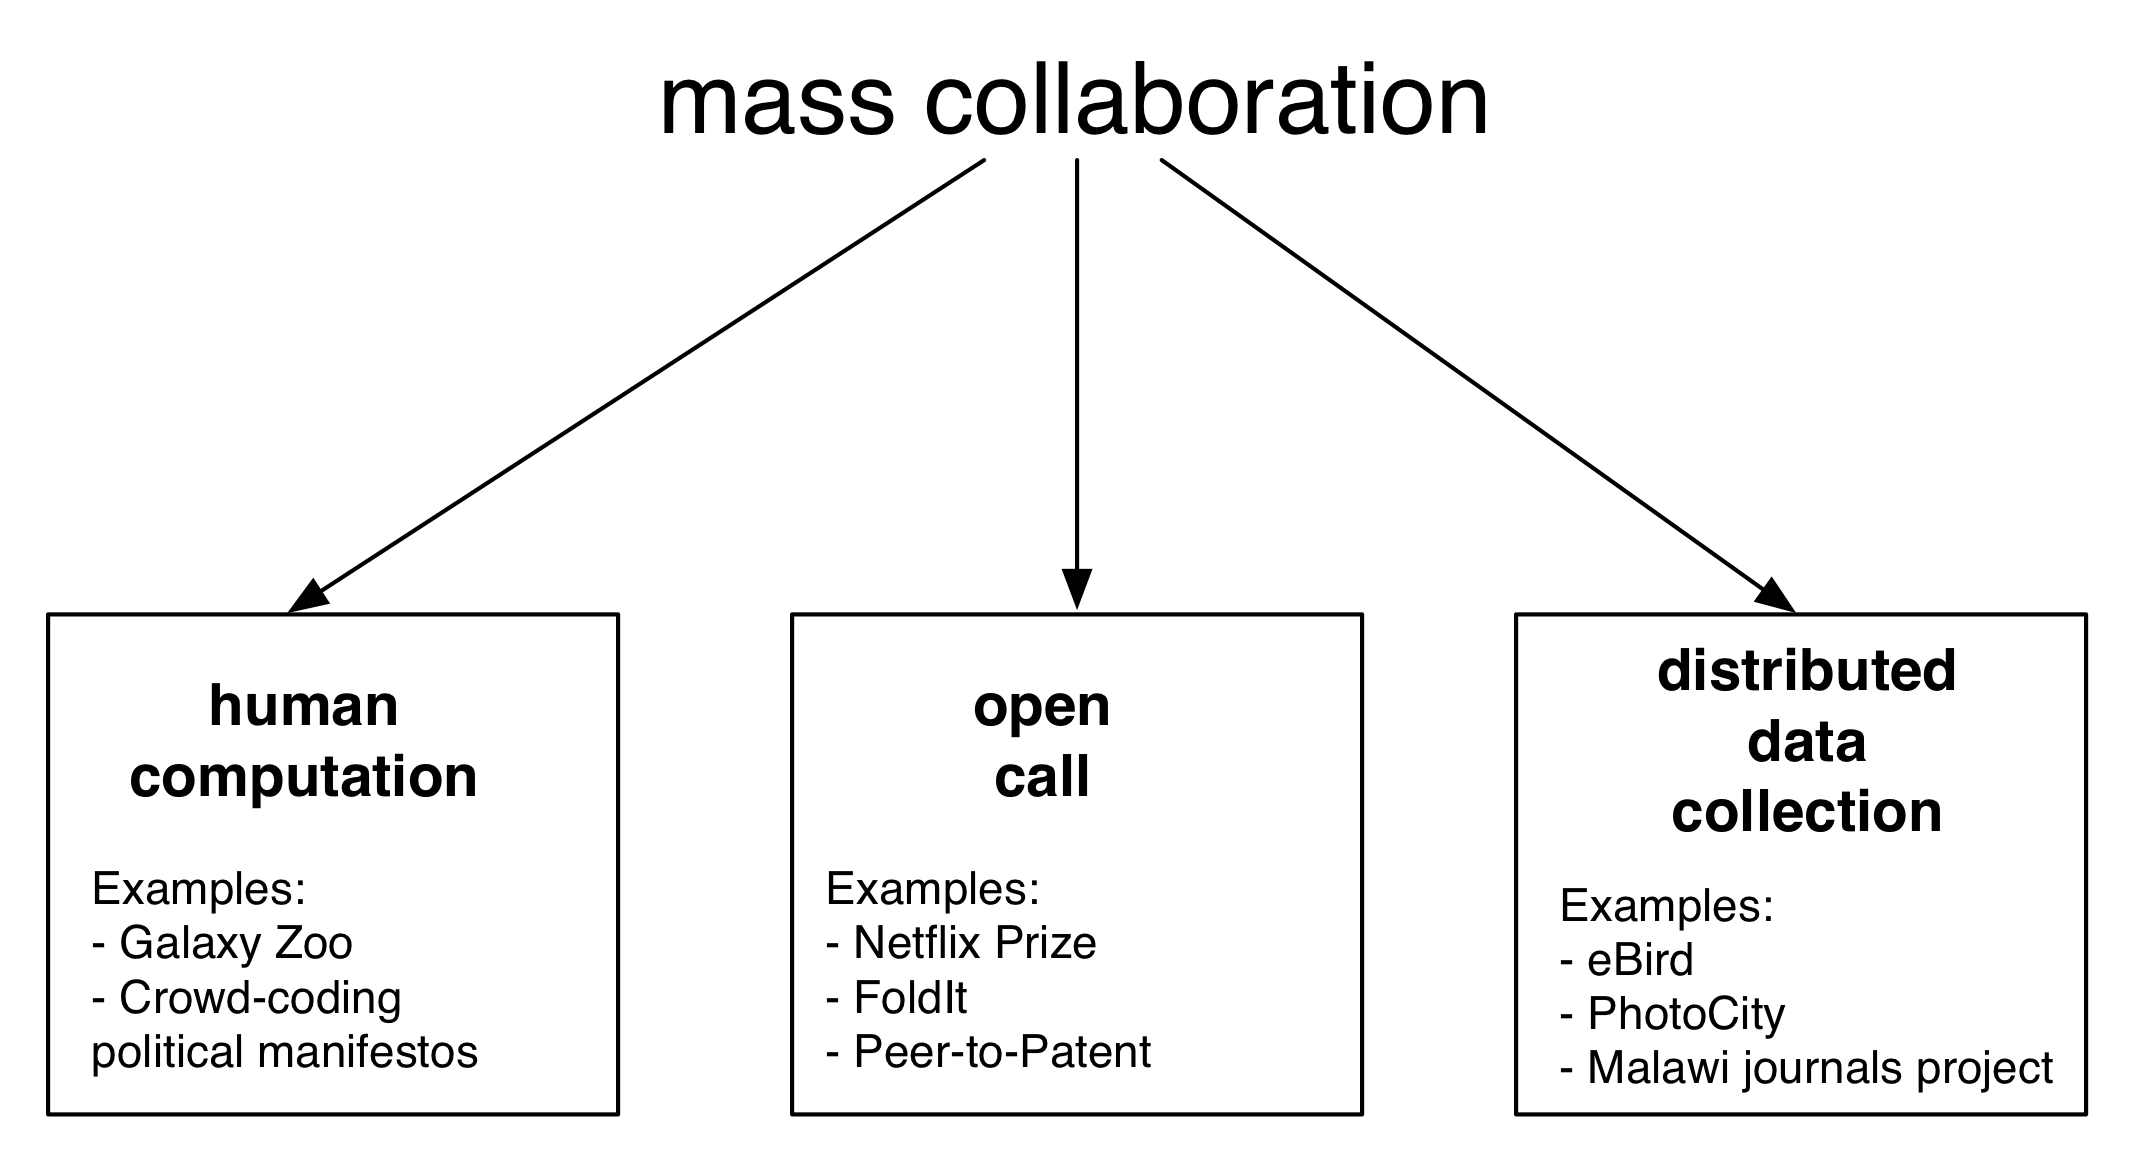 Obrázek 5.1: Mass spolupráce schematické. Tato kapitola je organizována kolem tří hlavních forem masové spolupráce: lidská výpočetních, otevřené výzvy, a distribuovaný pro sběr dat. Obecněji řečeno, hmotnost spolupráce kombinuje nápady z takových oblastech, jako občan vědy, crowdsourcing, a kolektivní inteligenci.